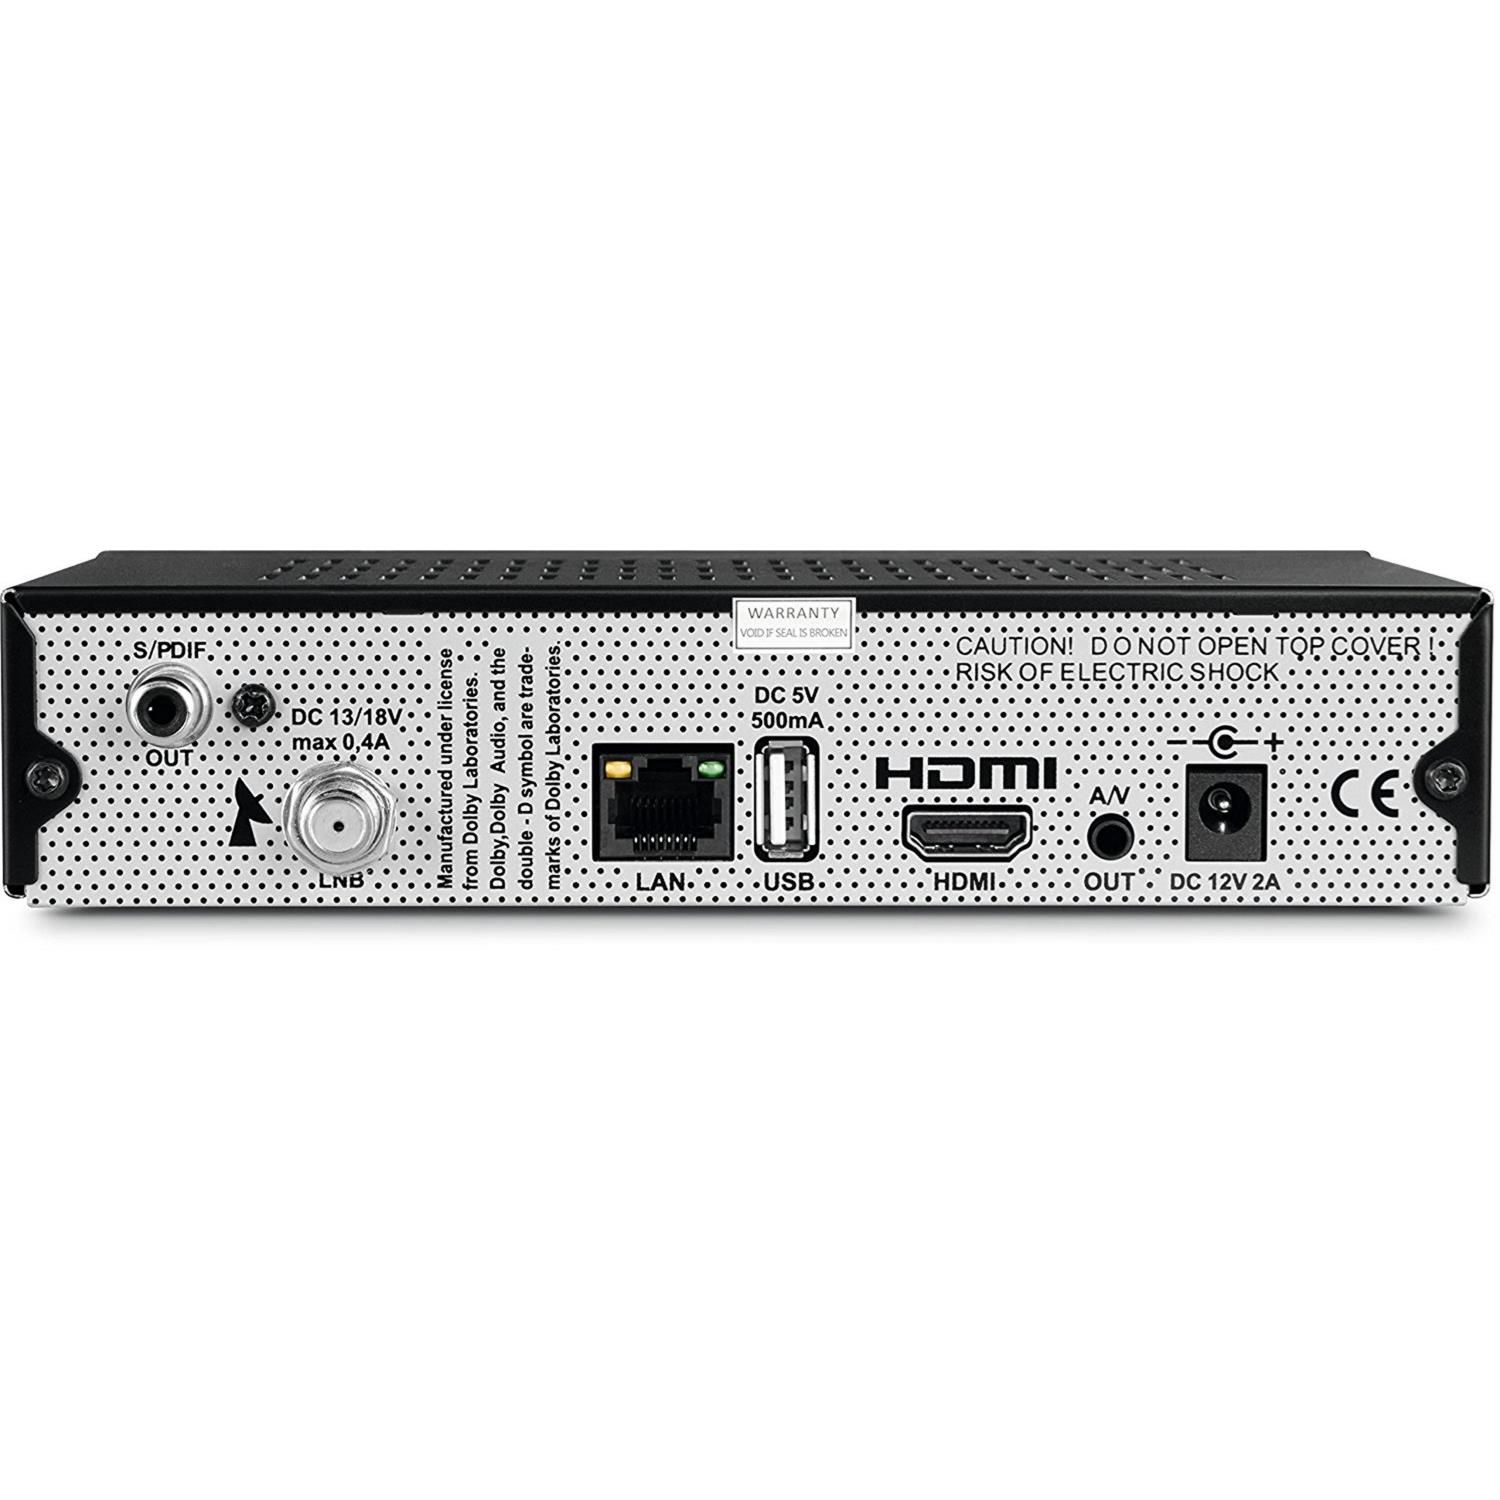 HD SAT-Receiver S3 DVB-S2, Digit (HDTV, DVB-S, schwarz) TECHNISAT V2